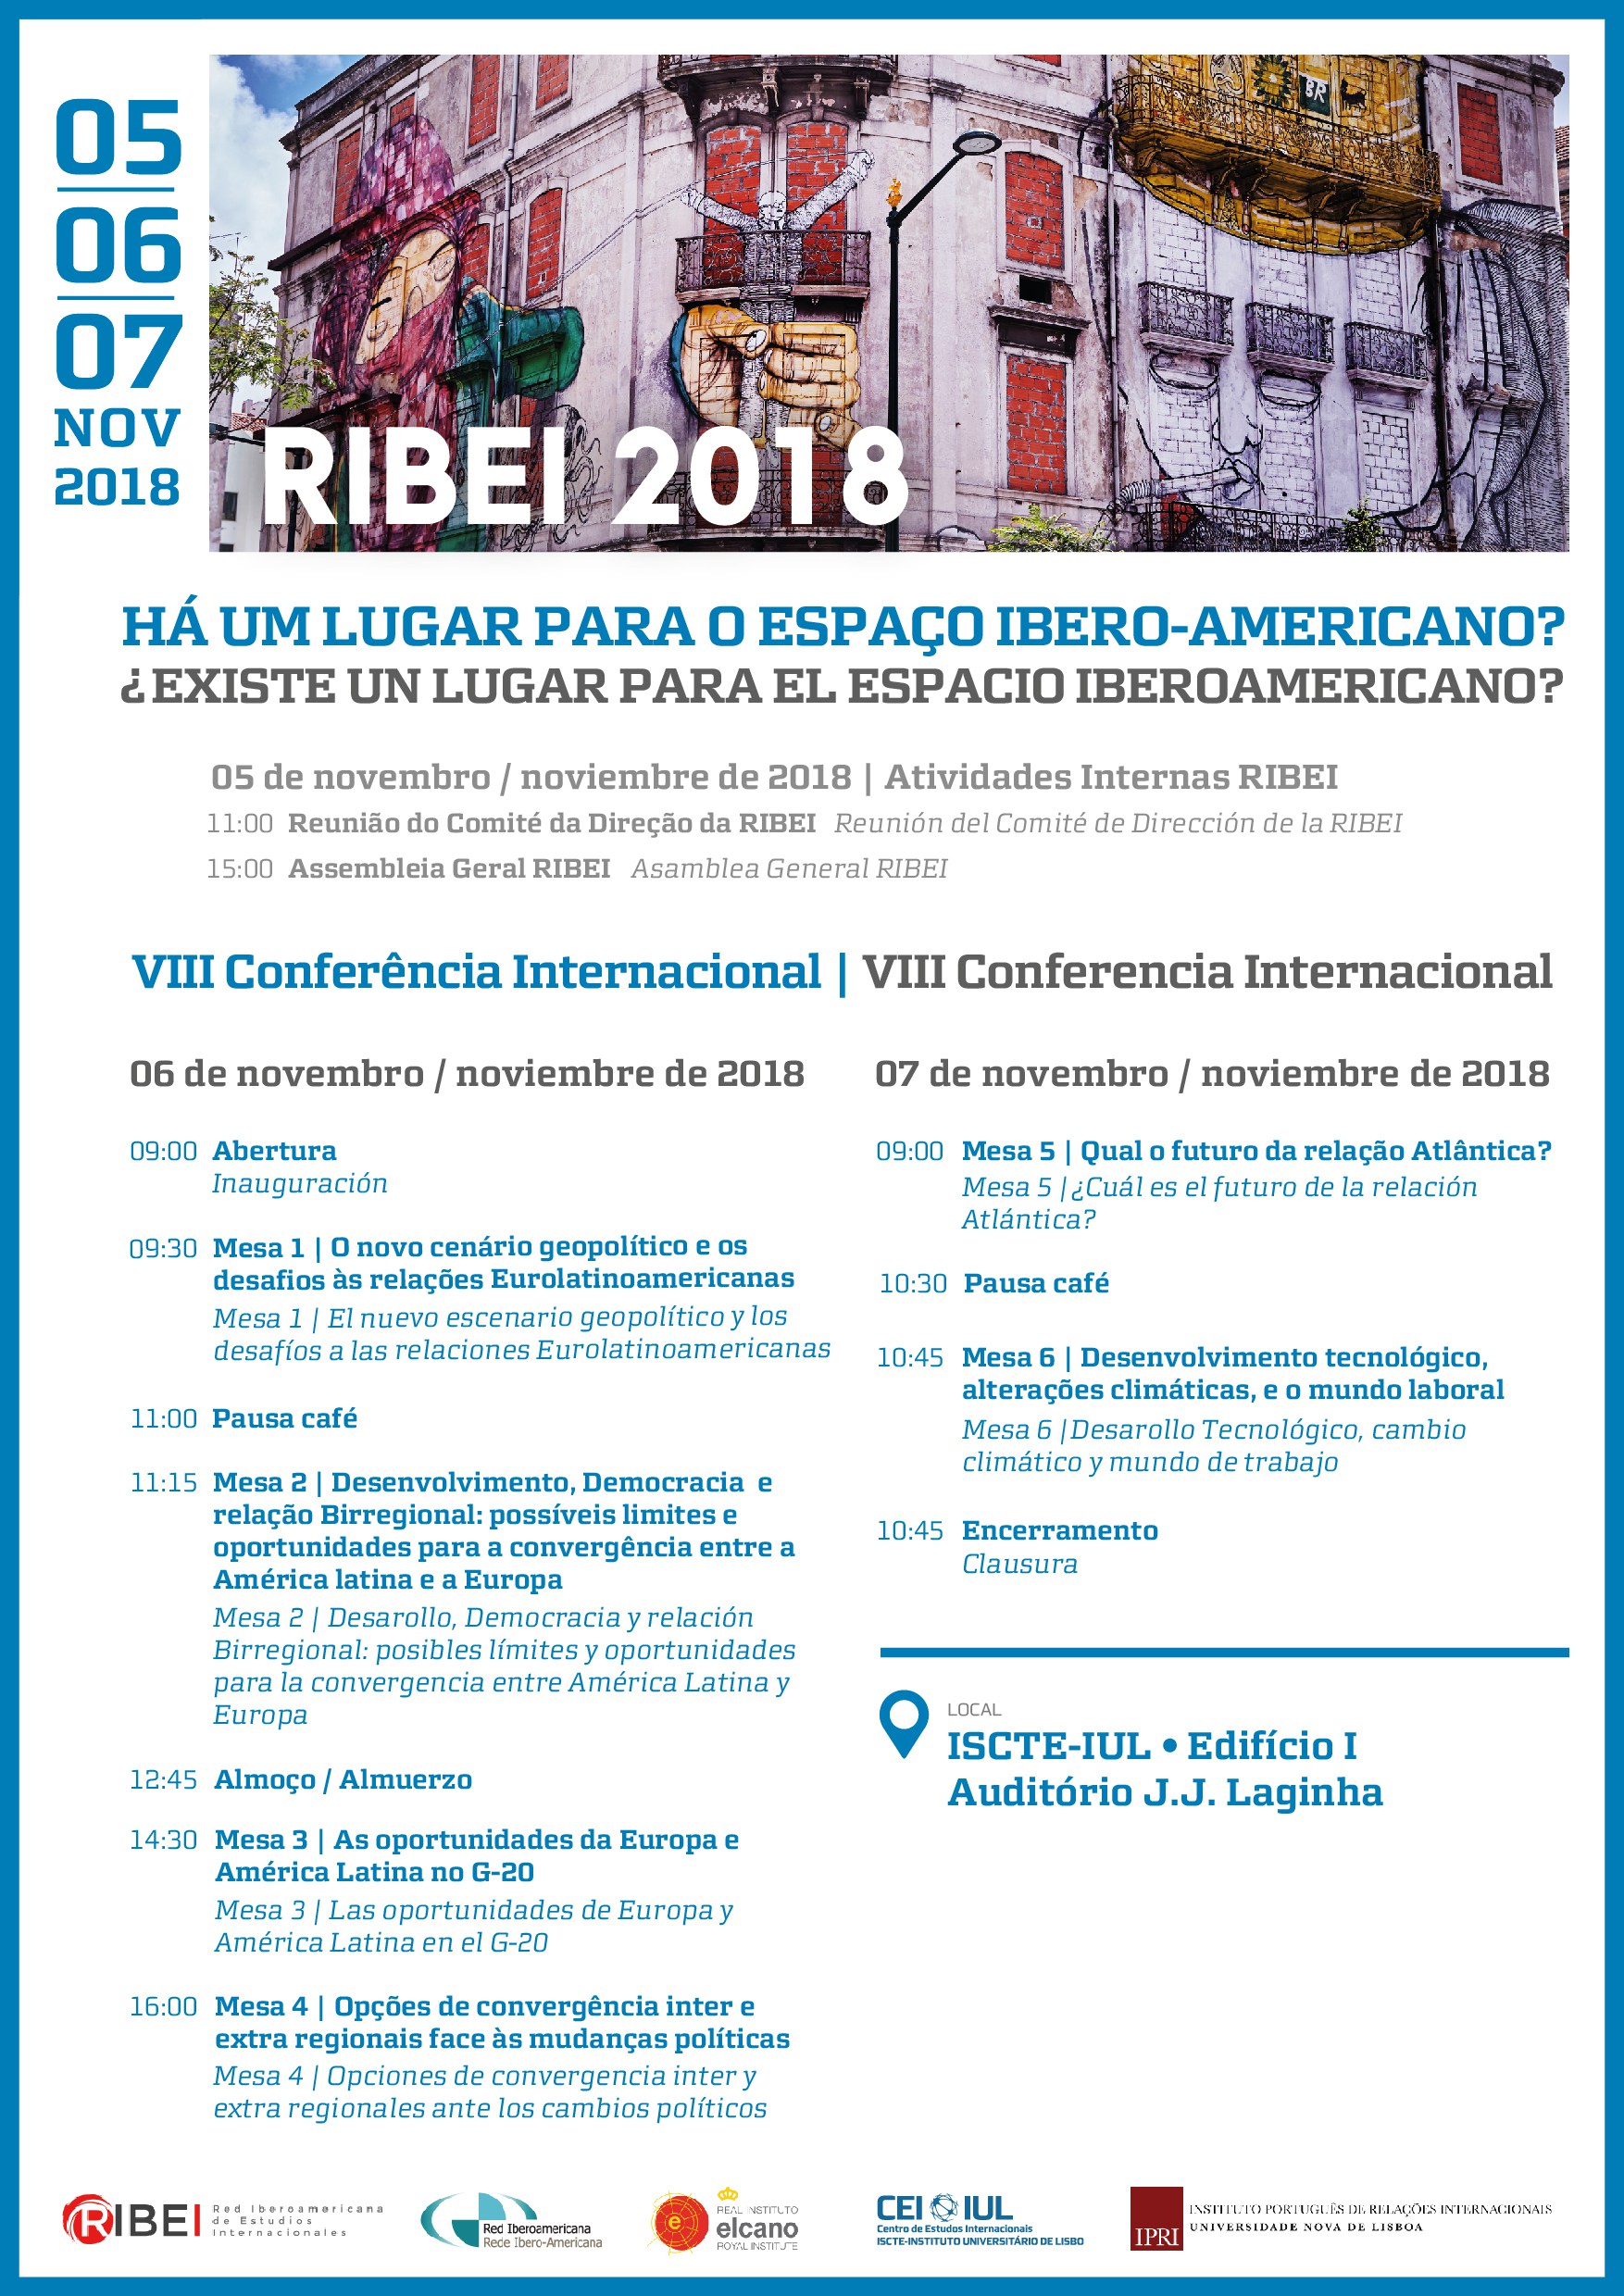 OEI na VIII Conferência da Rede Ibero-americana (RIBEI) “Há lugar para um espaço Ibero-Americano?”